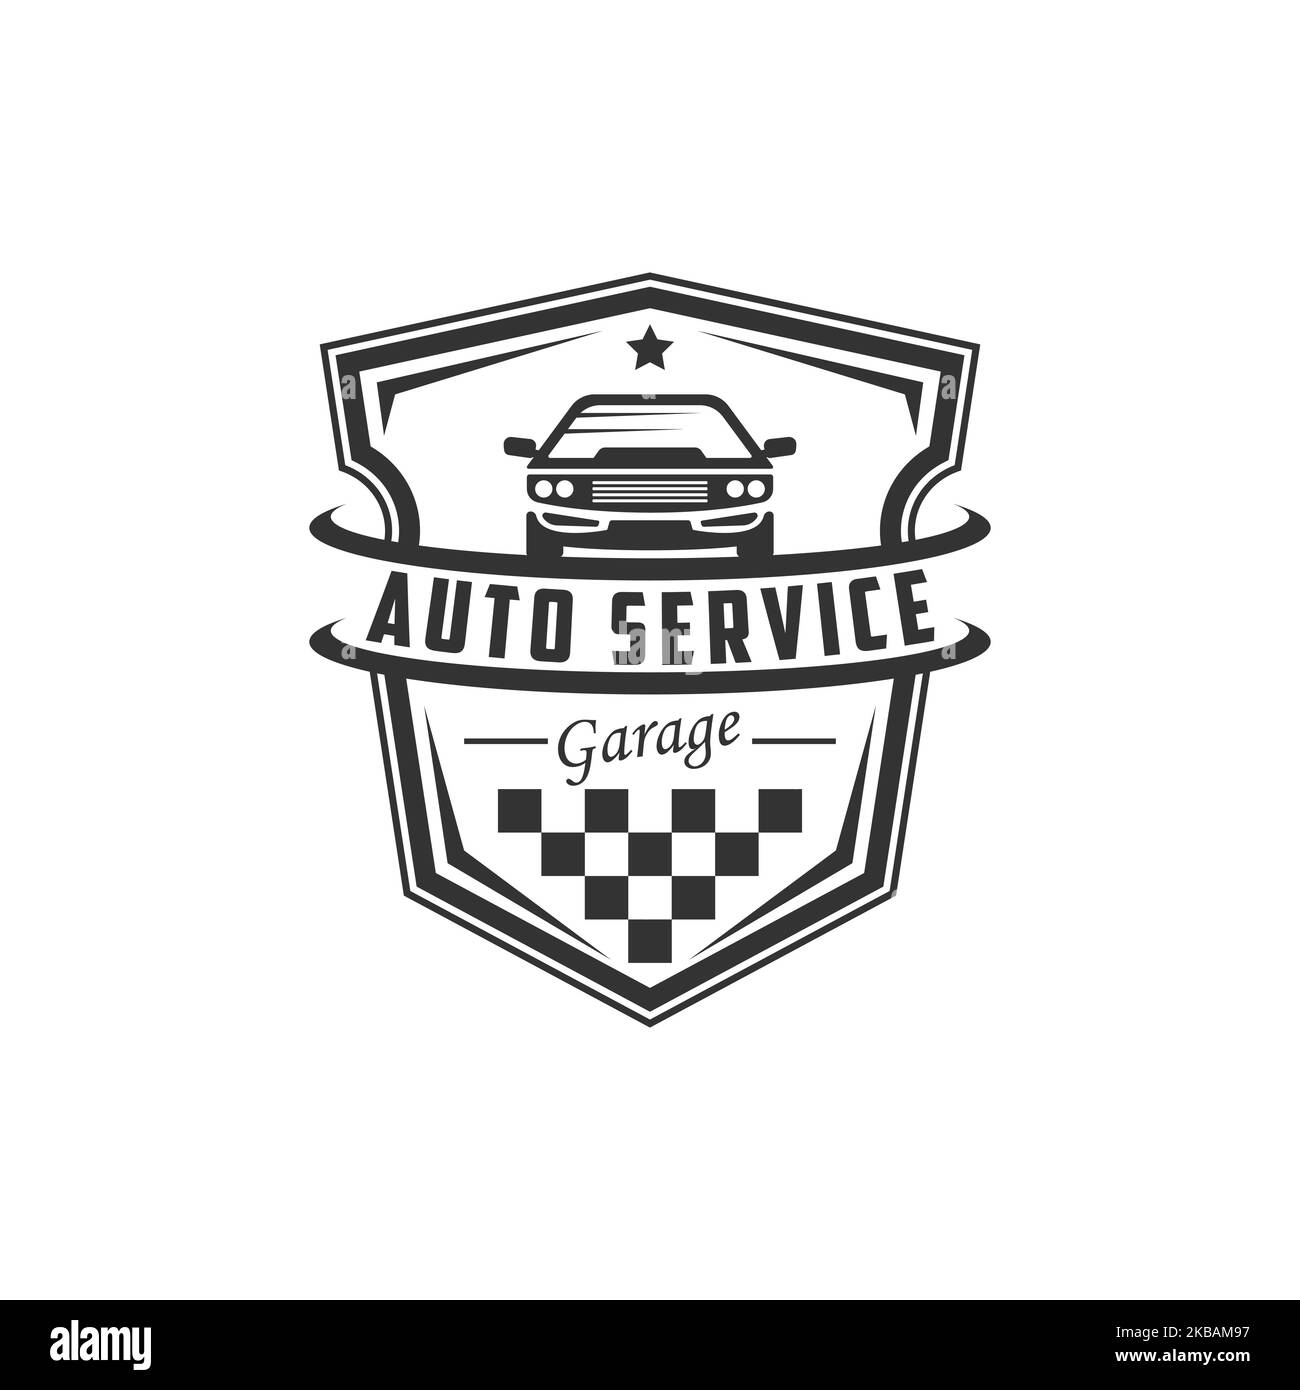 Motorreparatur-mechaniker-logo, service, wartung, auto- und motorrad-reparaturwerkstatt-logos  und c